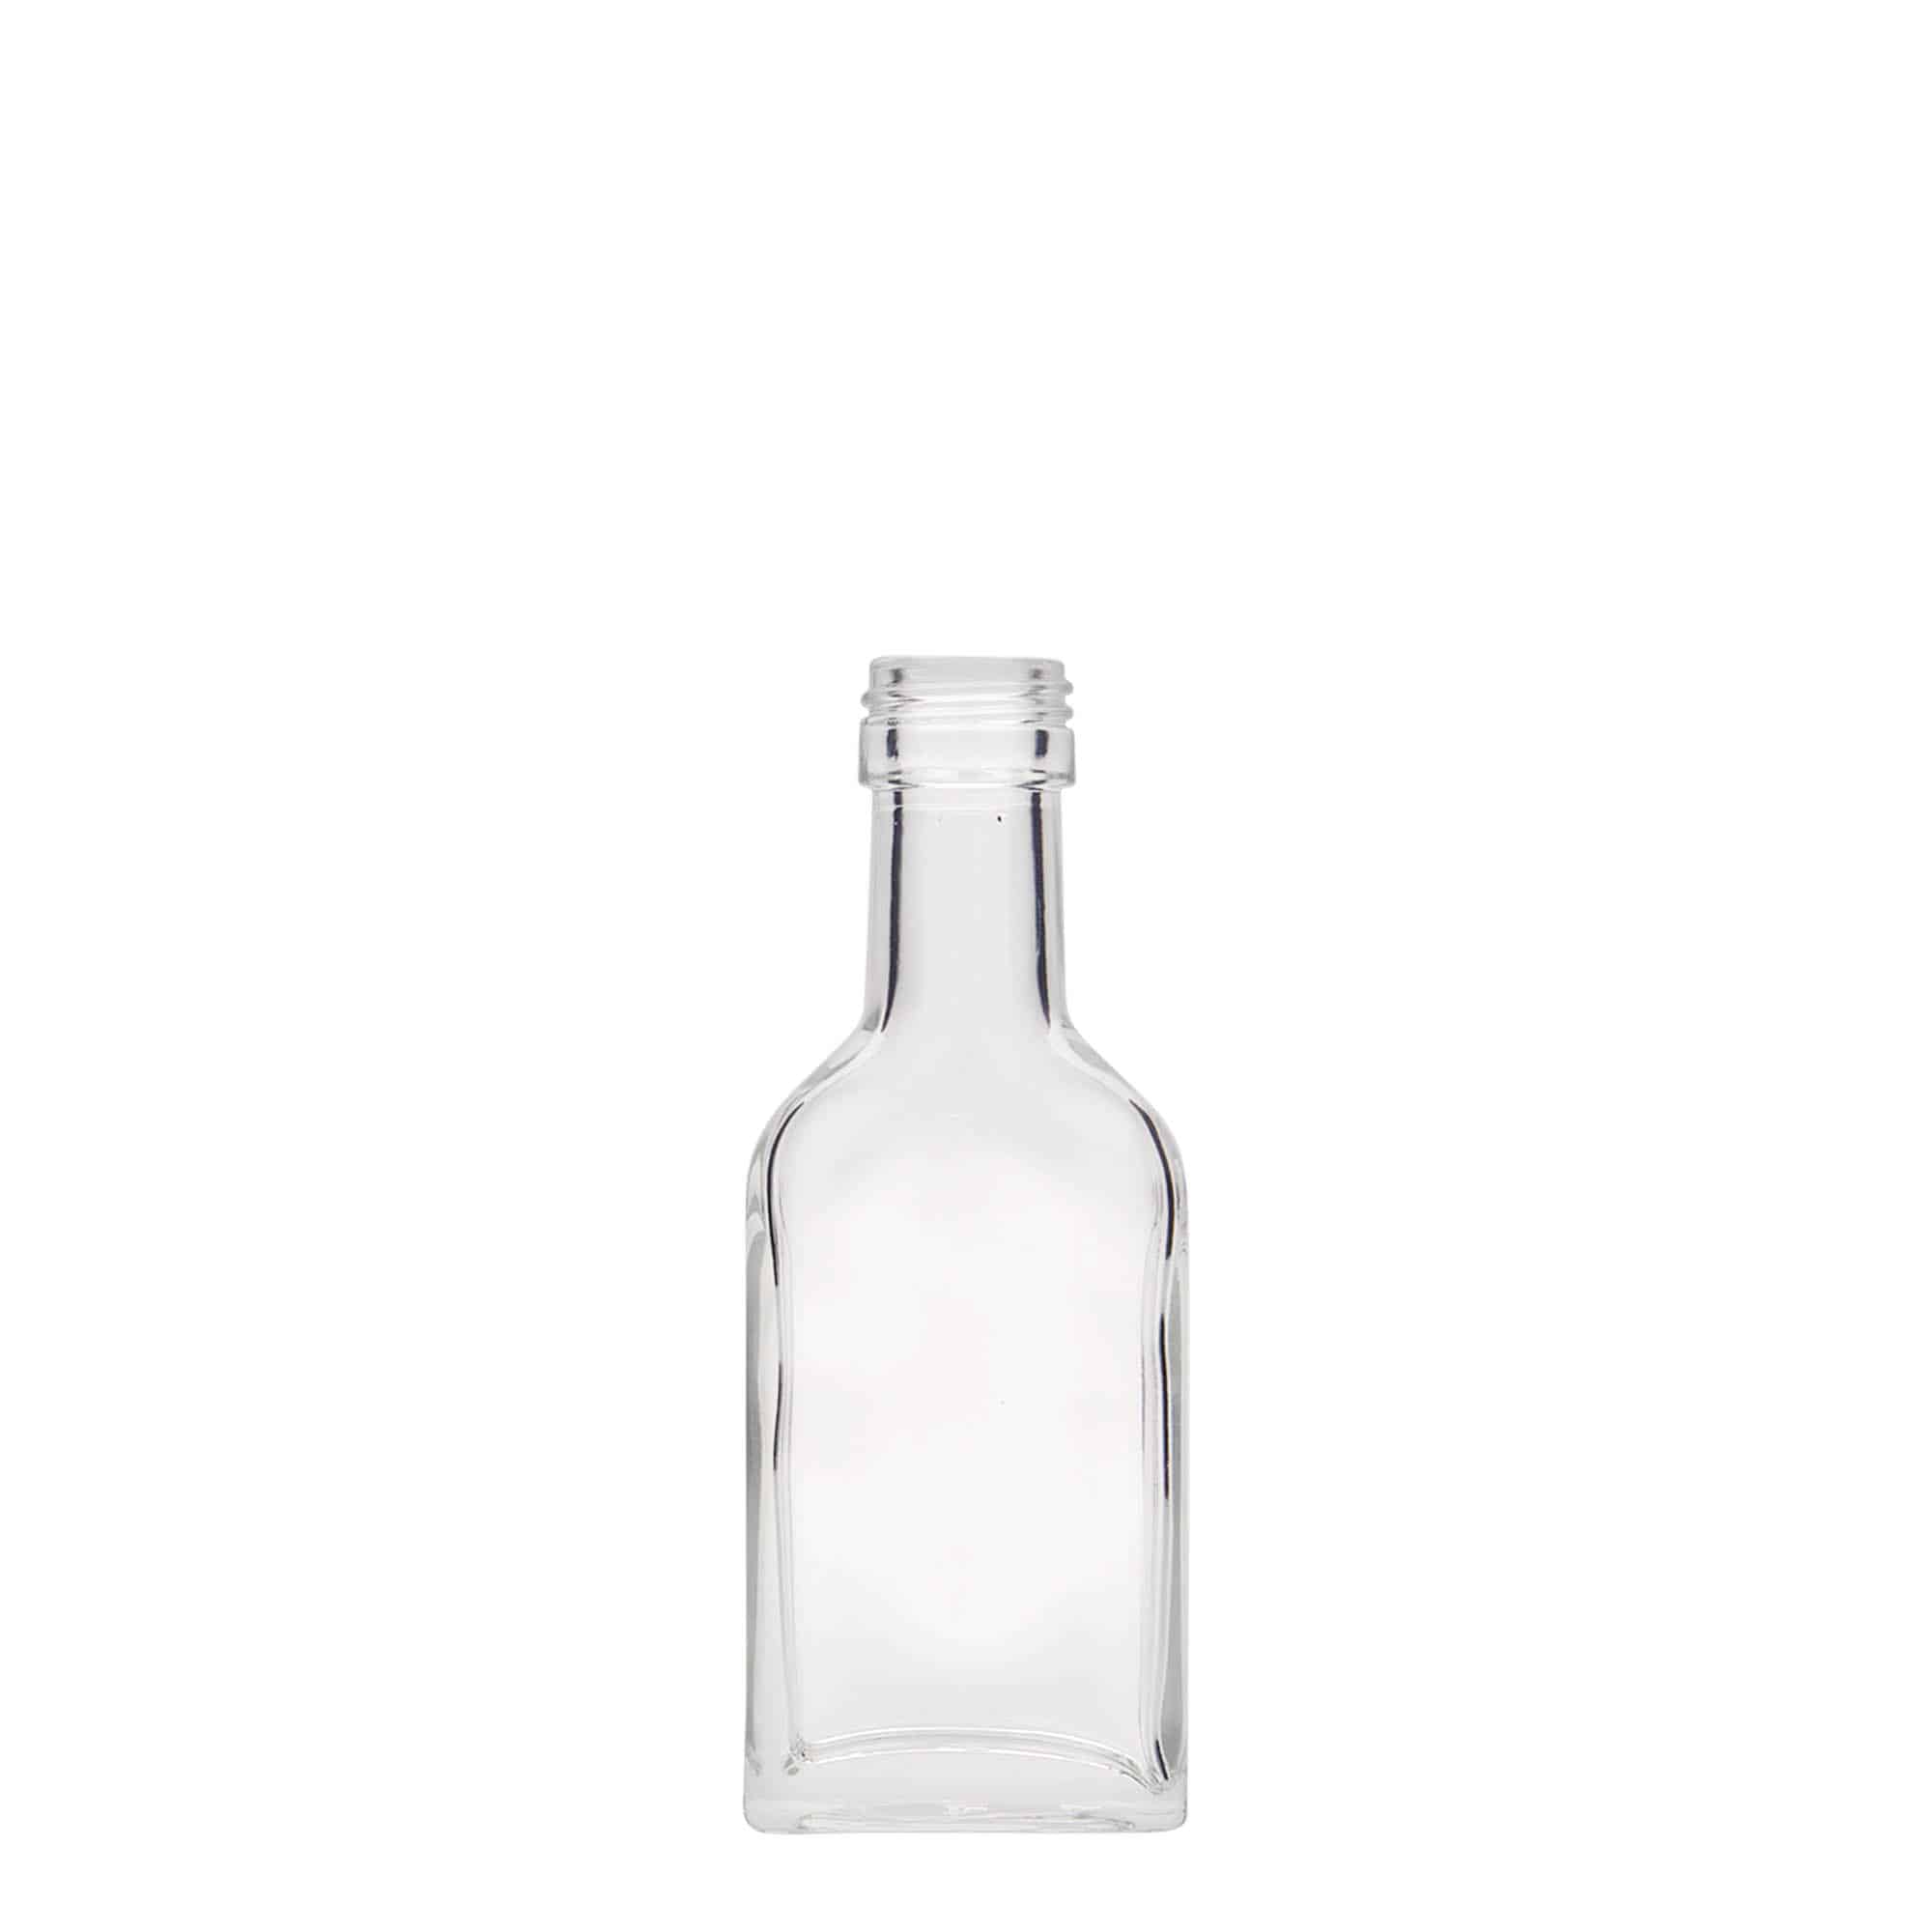 40 ml long neck pocket flask bottle, rectangular, glass, closure: PP 22